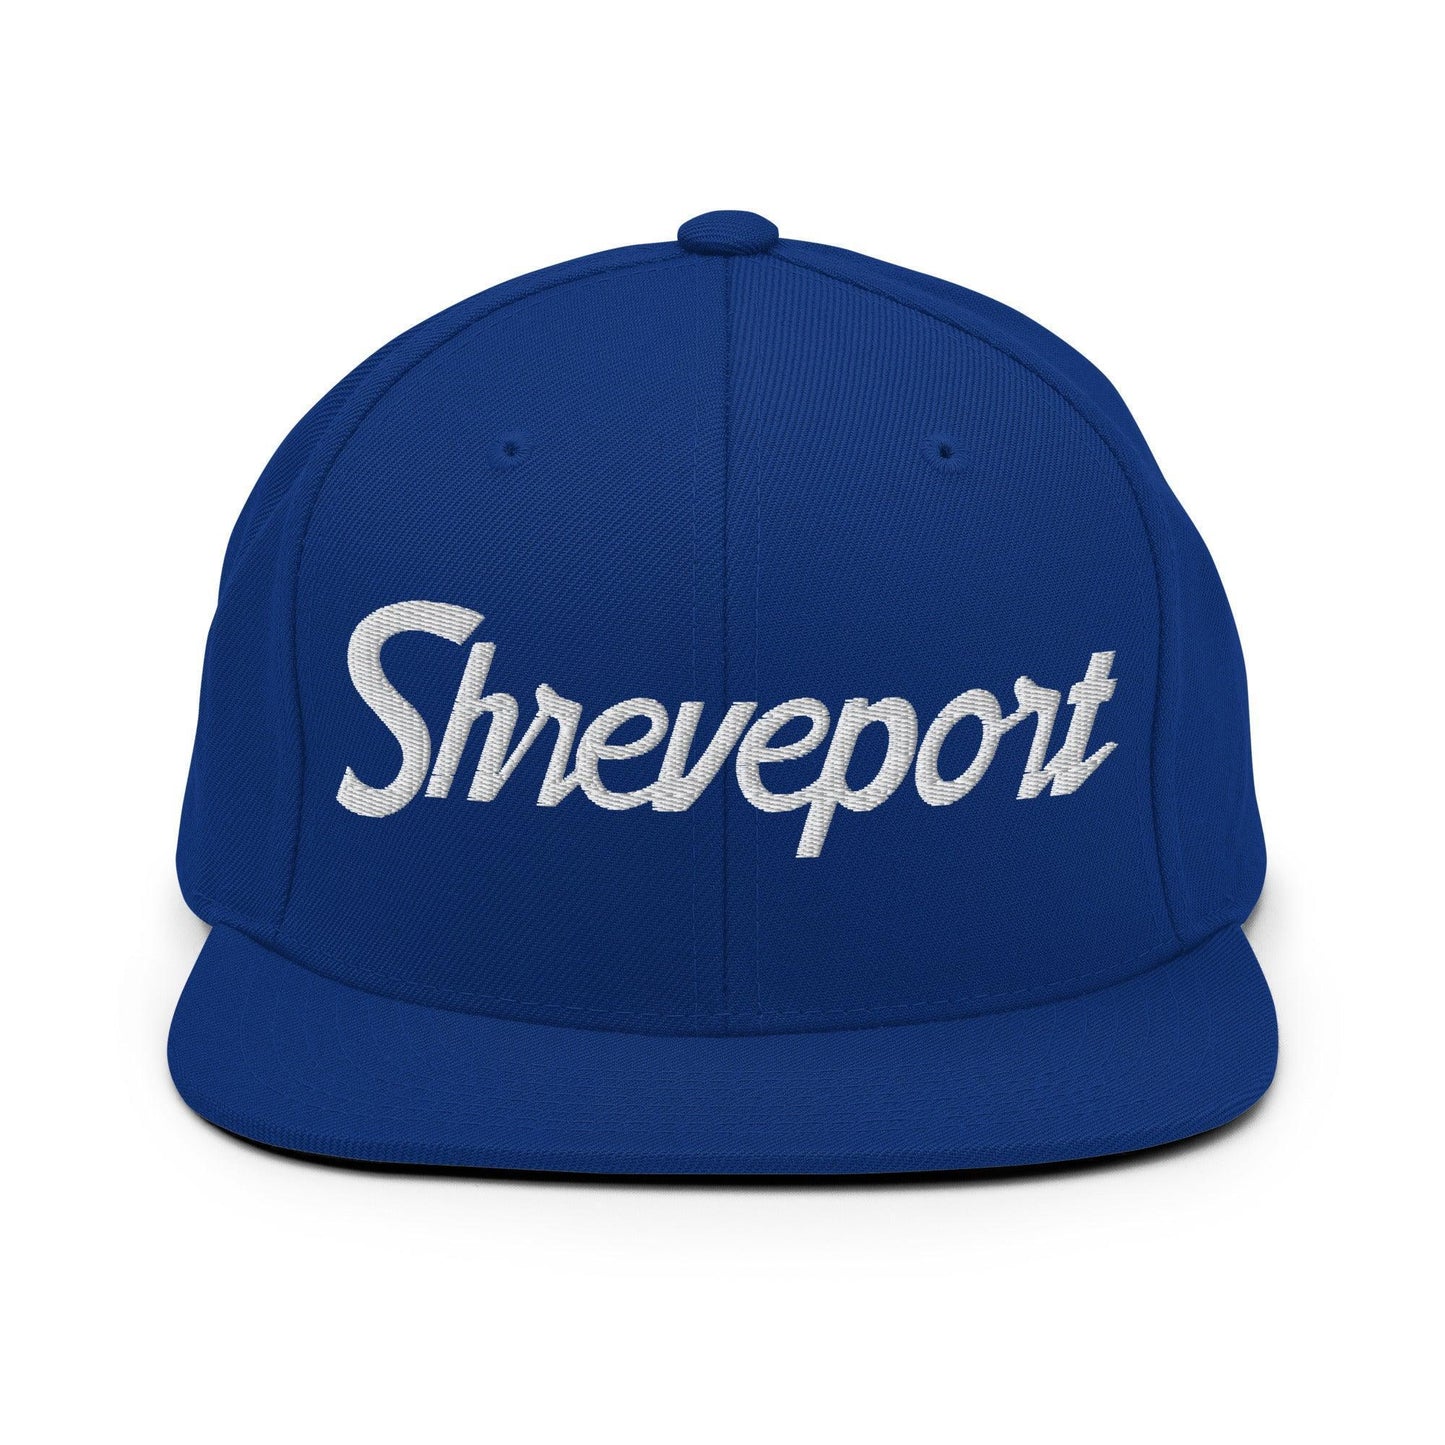 Shreveport Script Snapback Hat Royal Blue